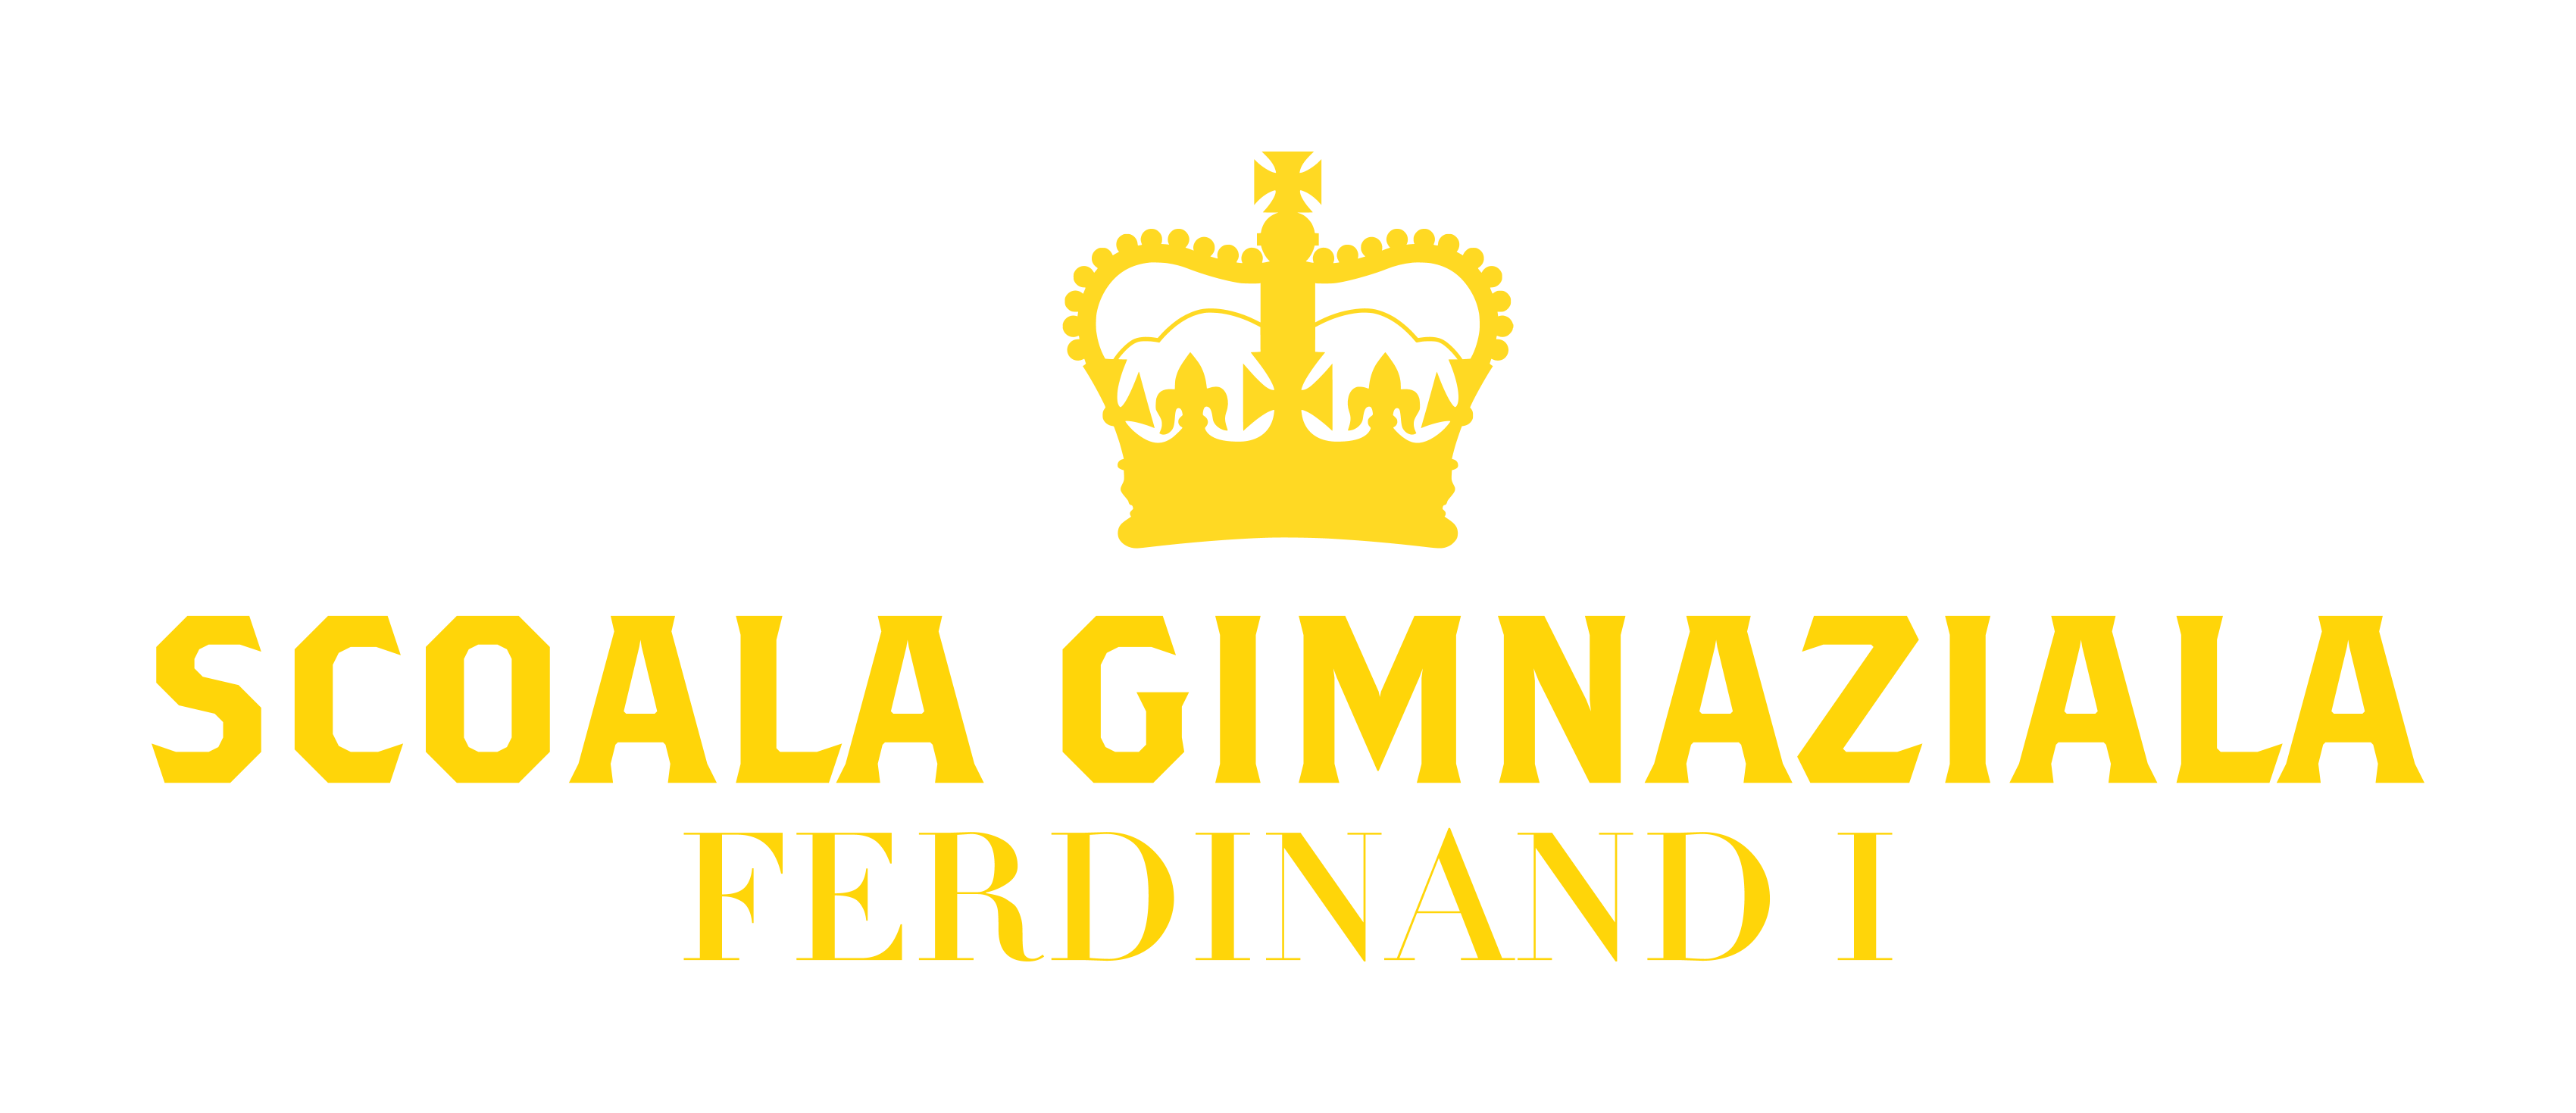 Scoala Gimnaziala Ferdinand I